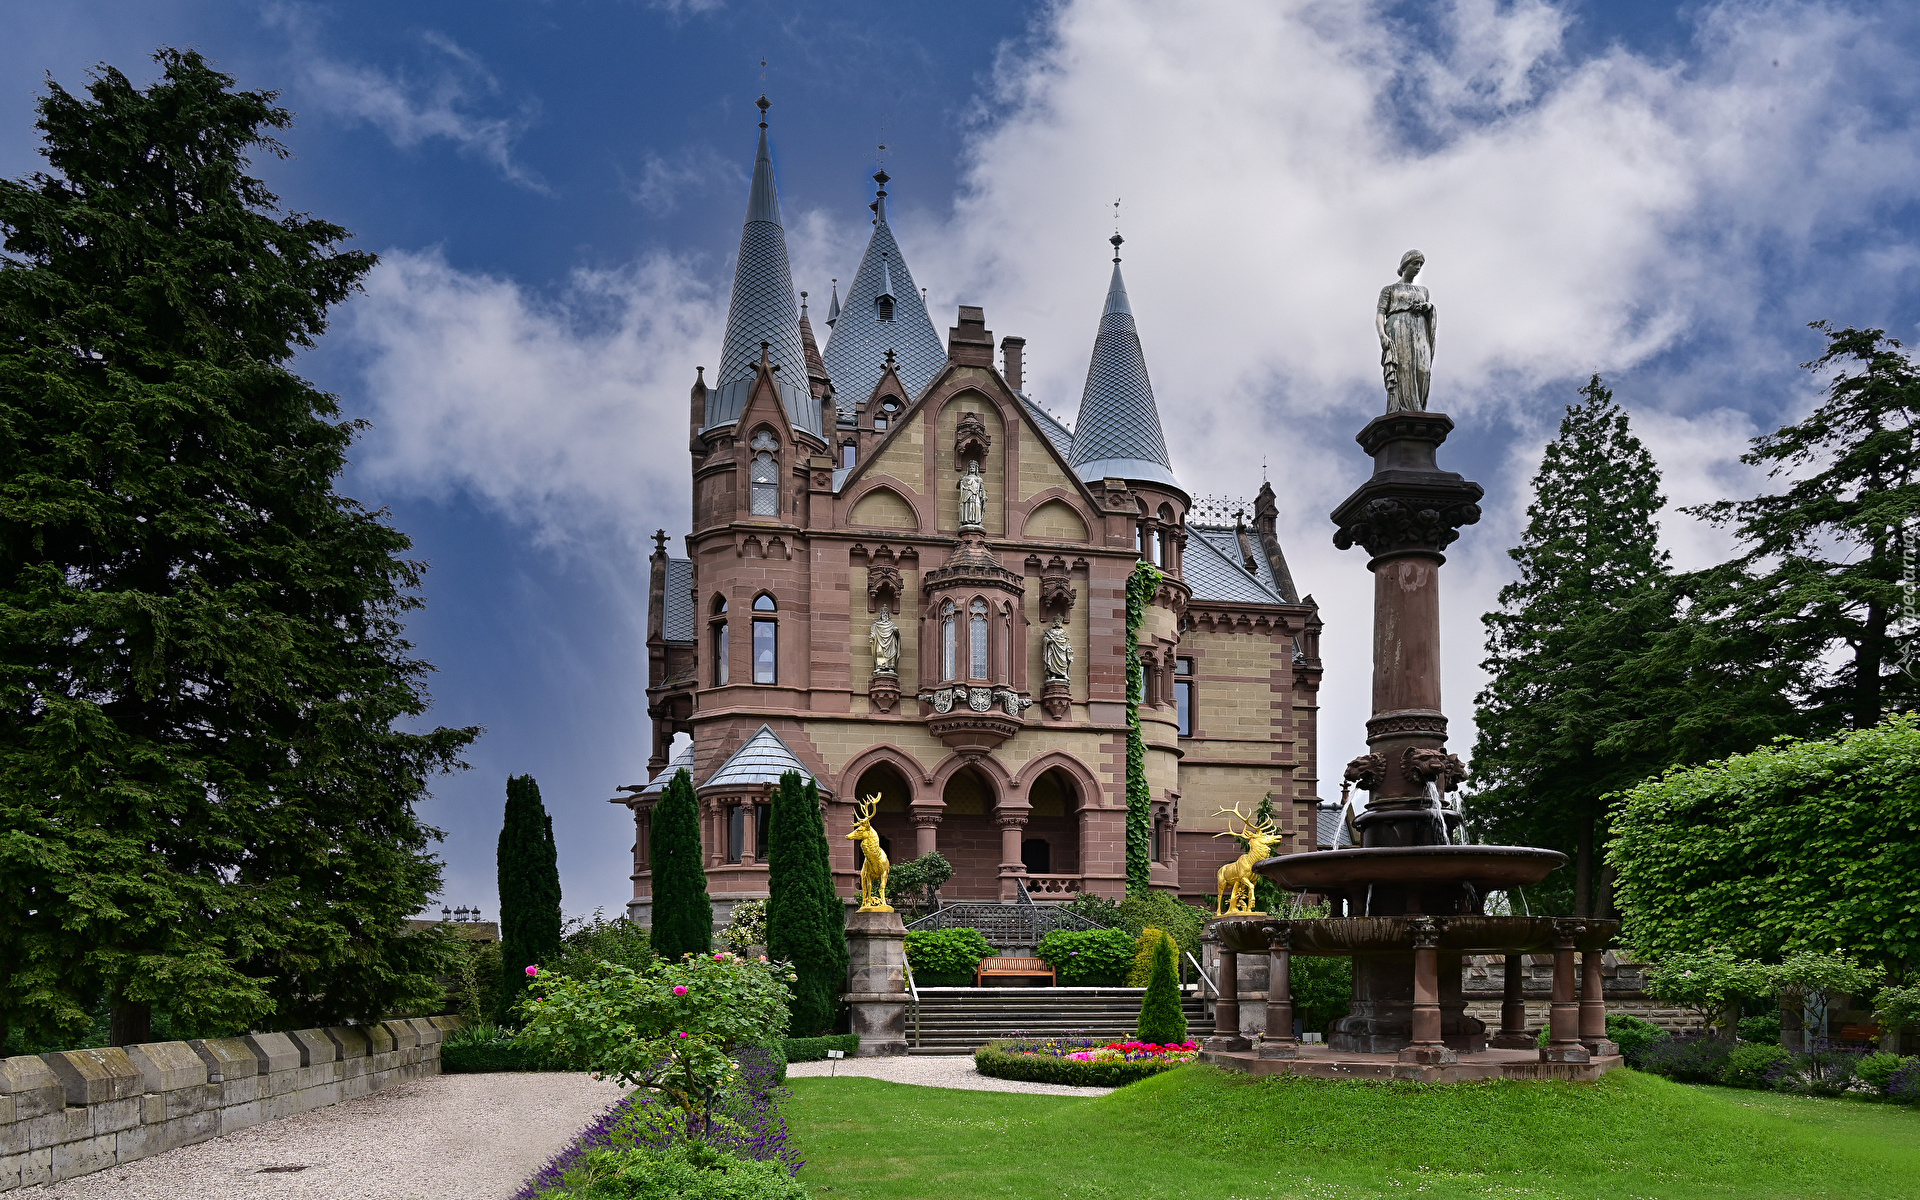 Zamek Drachenburg, Ogród, Drzewa, Kwiaty, Fontanna, Posągi, Konigswinter, Niemcy